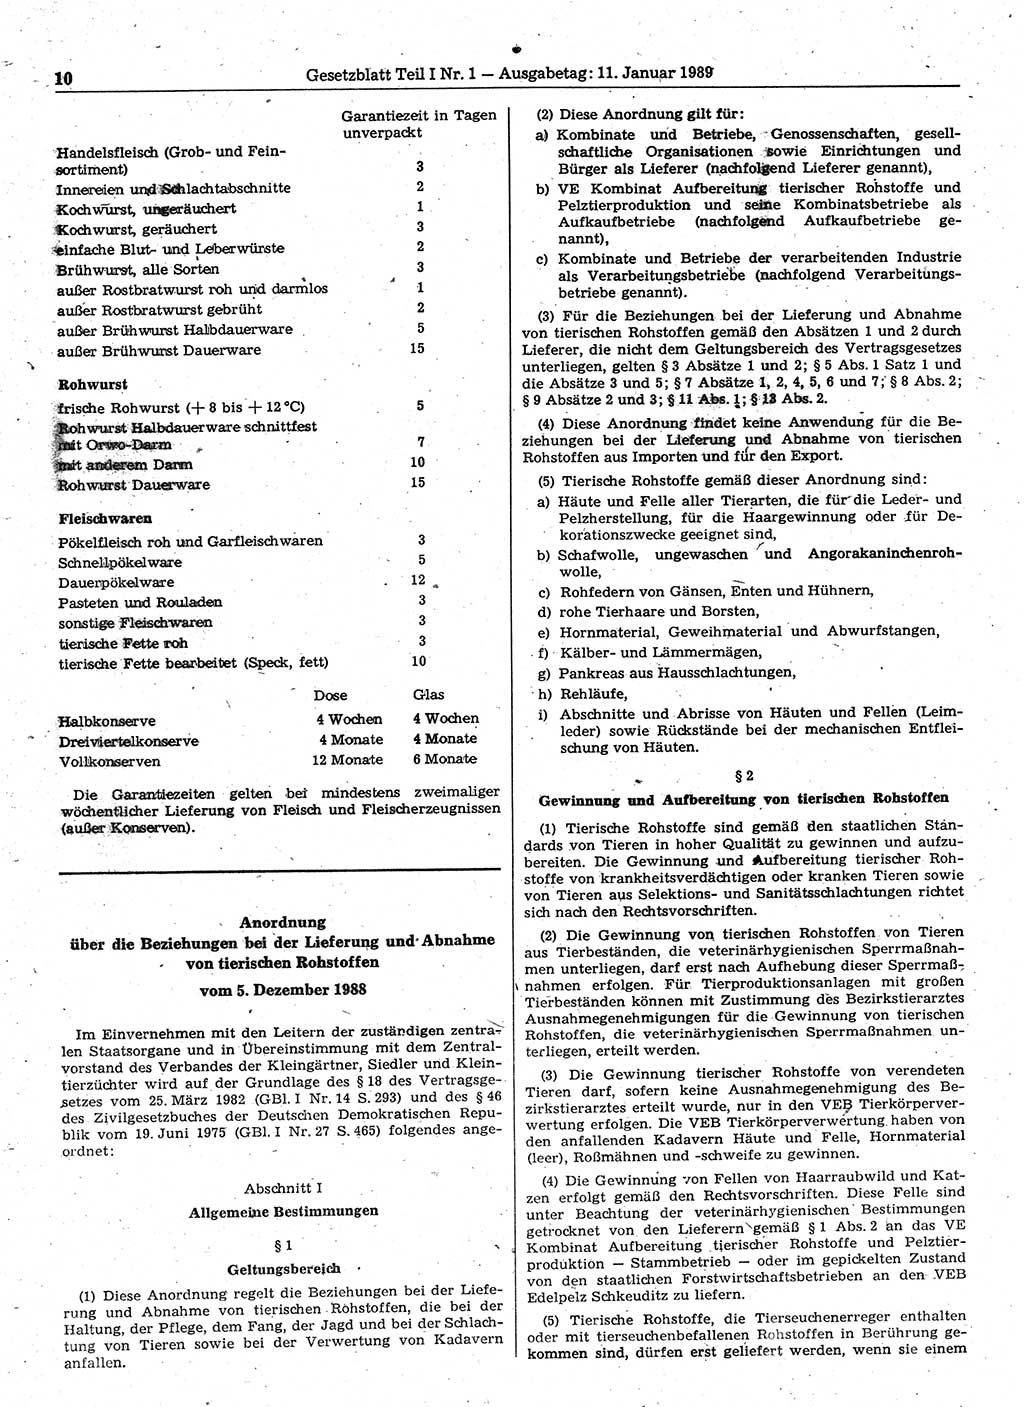 Gesetzblatt (GBl.) der Deutschen Demokratischen Republik (DDR) Teil Ⅰ 1989, Seite 10 (GBl. DDR Ⅰ 1989, S. 10)